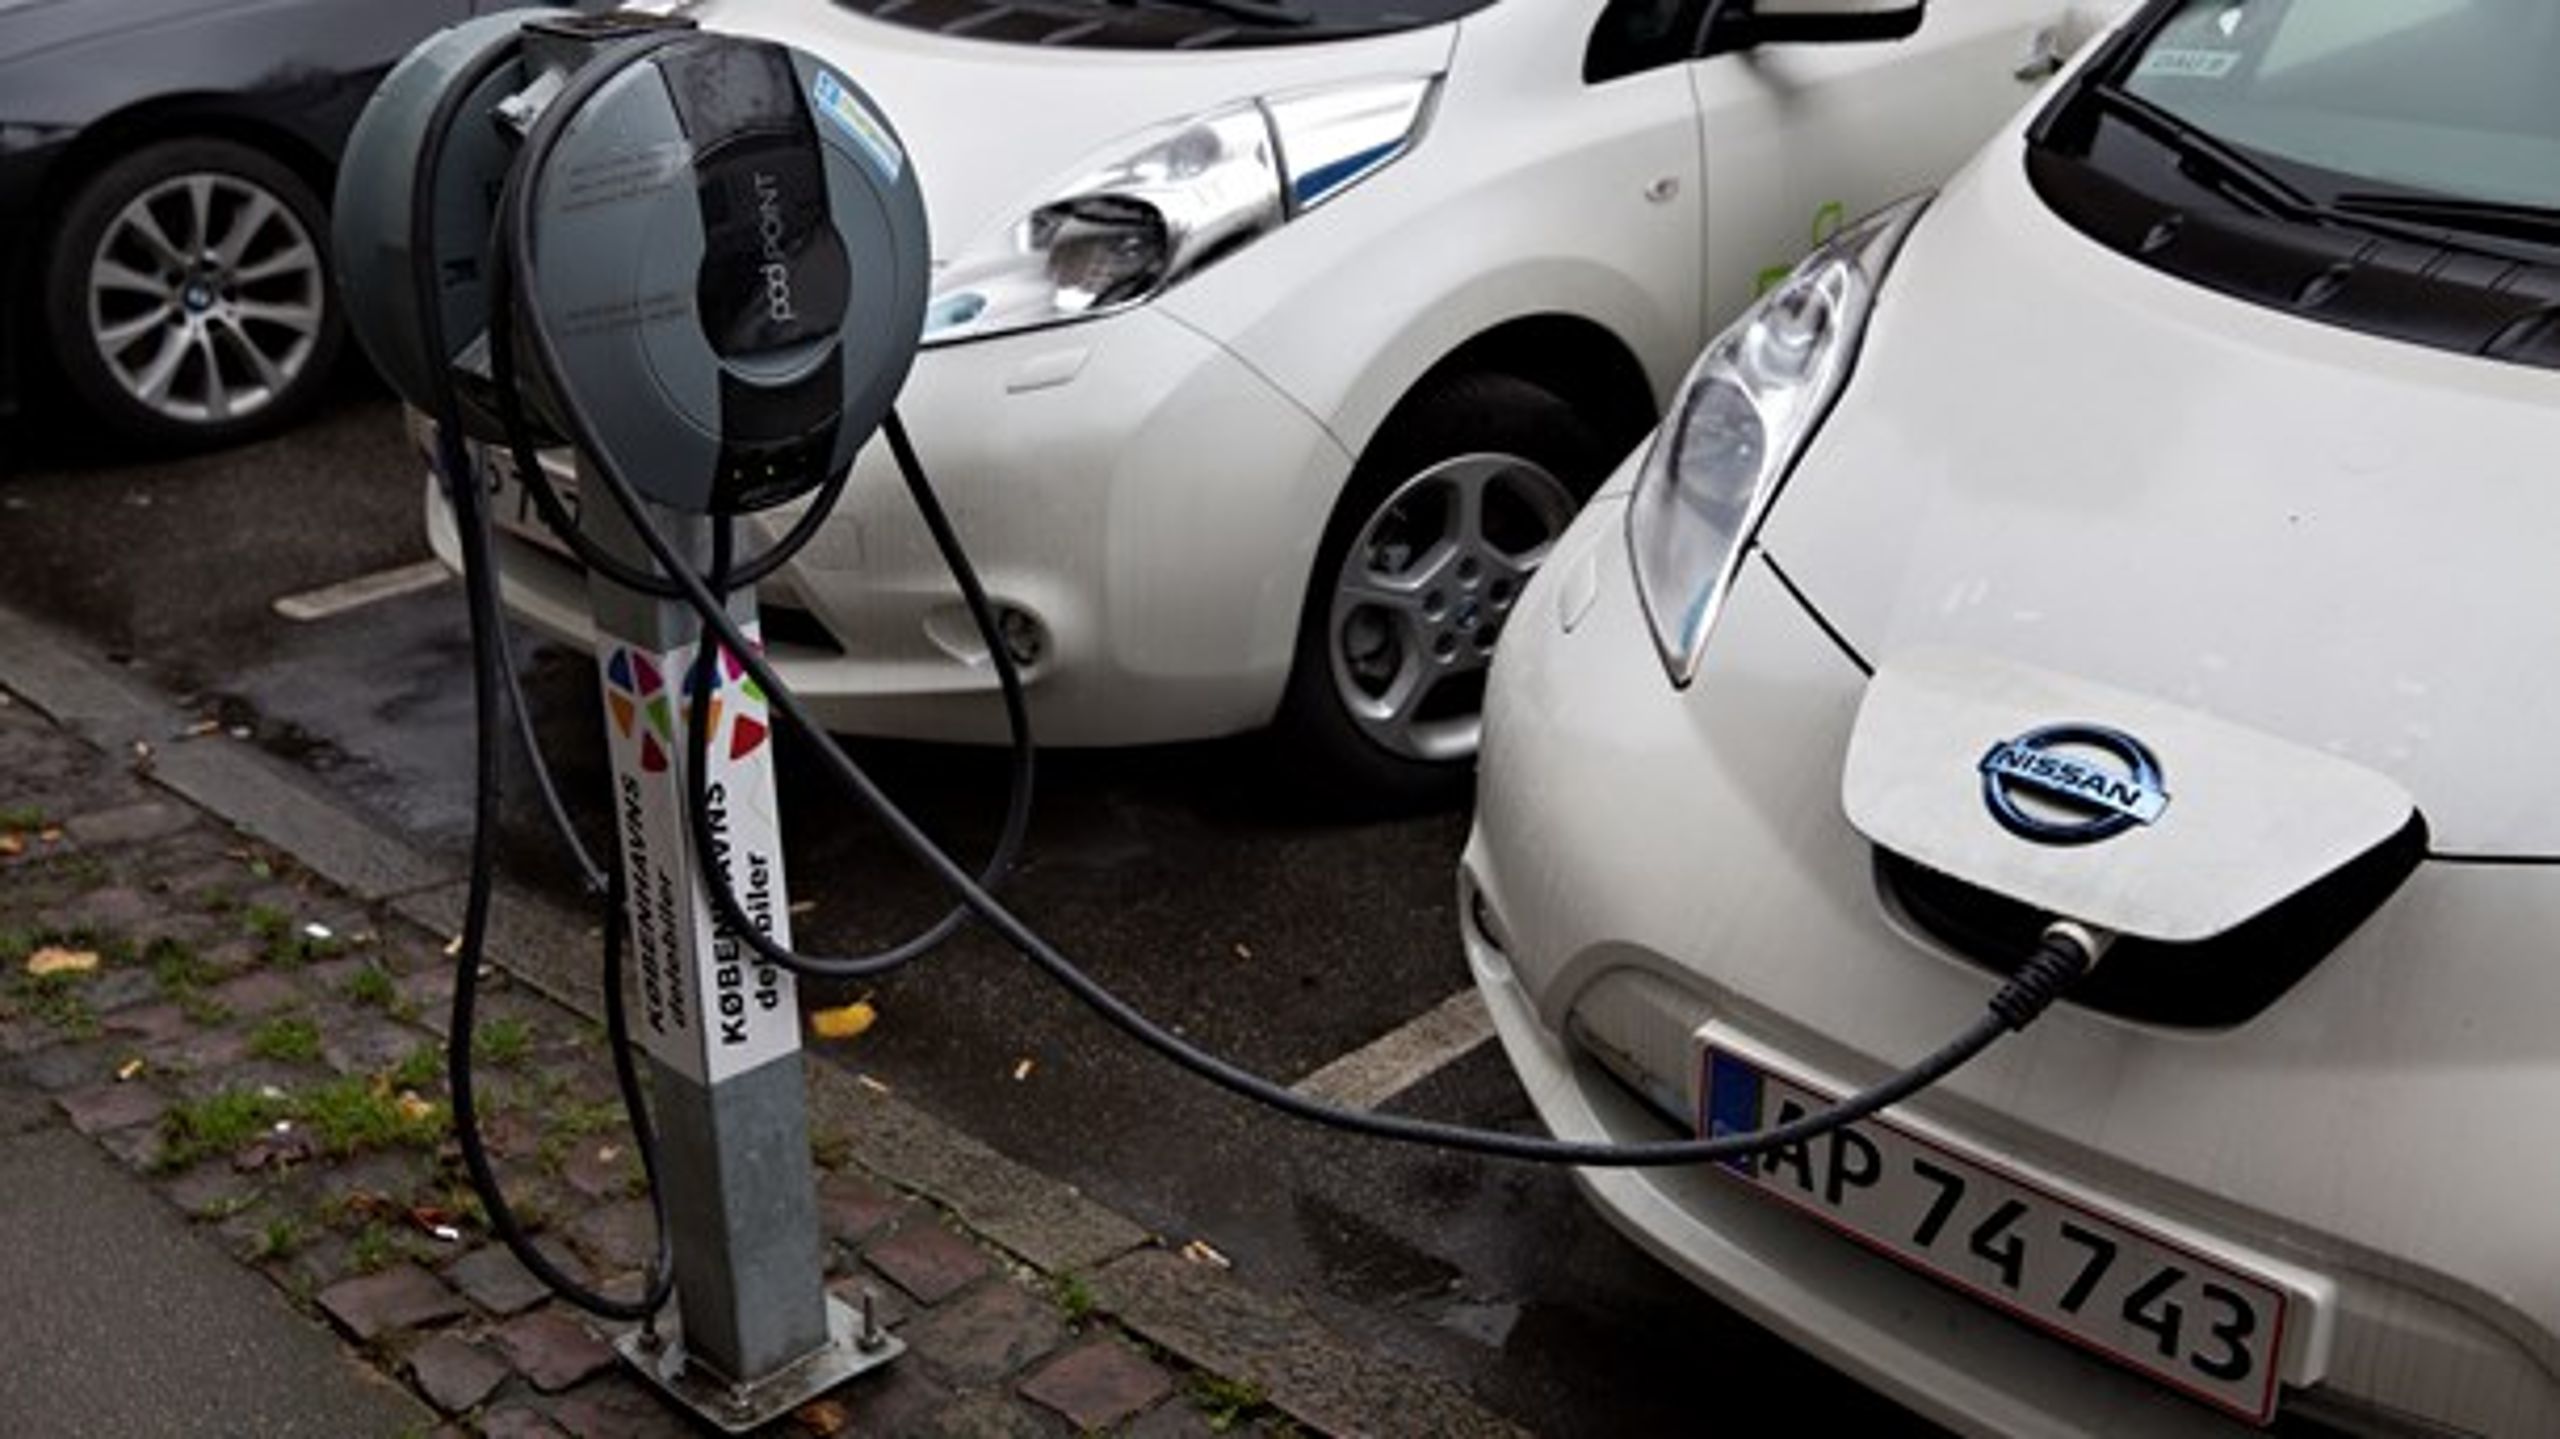 EU-Kommissionen har bedt Danmark og otte andre lande om at gennemføre EU's regler om etablering af infrastruktur til alternative brændstoffer, herunder ladestandere til elbiler.